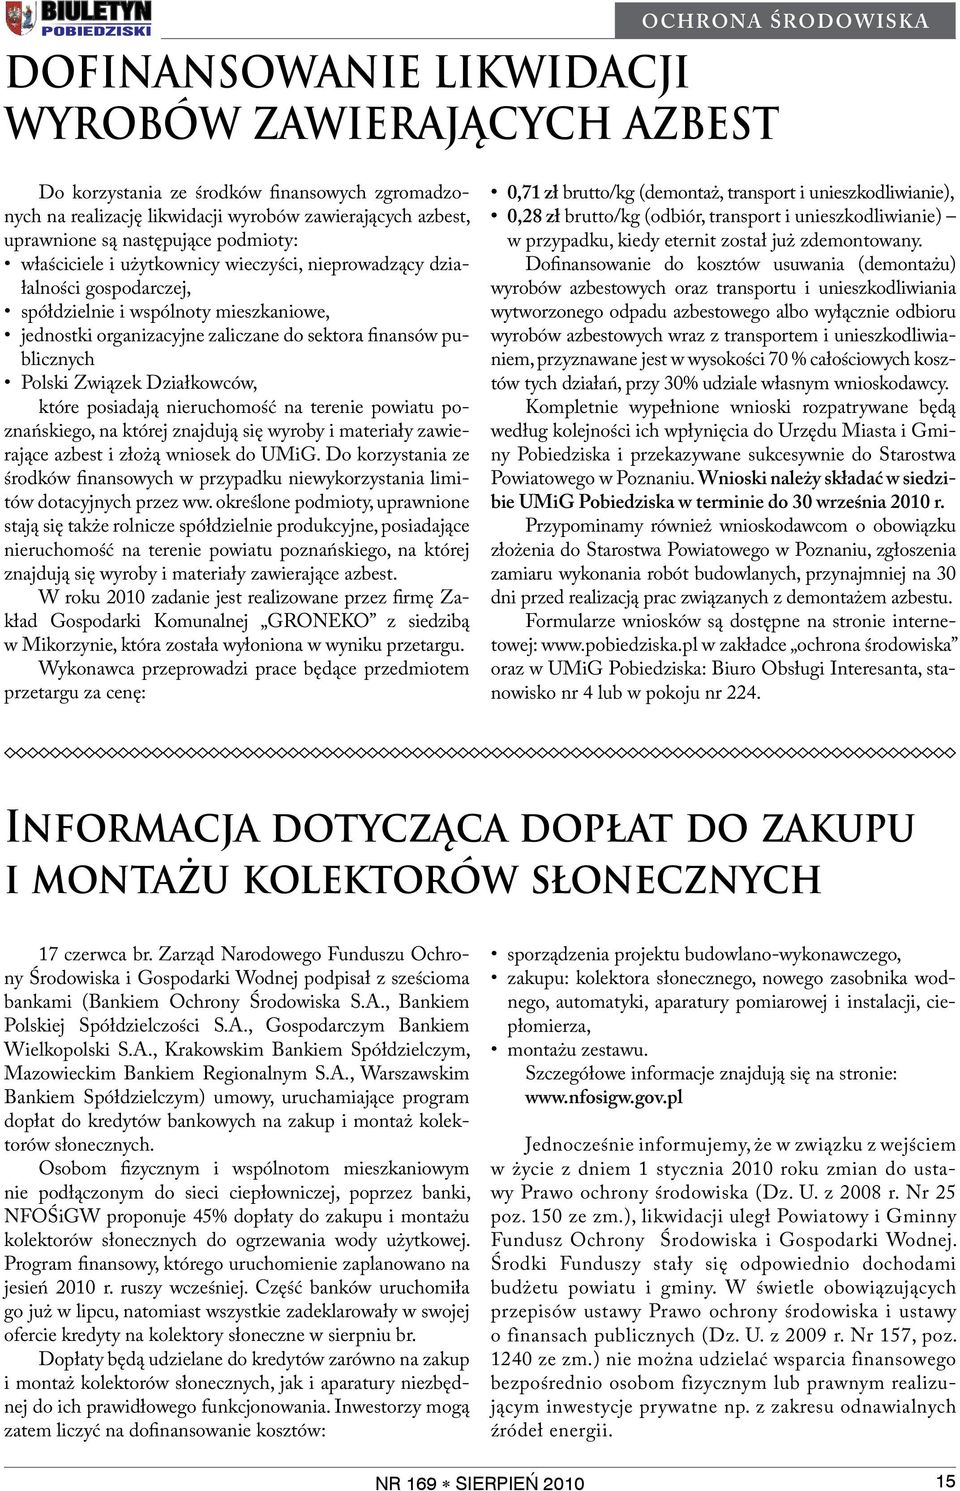 publicznych Polski Związek Działkowców, które posiadają nieruchomość na terenie powiatu poznańskiego, na której znajdują się wyroby i materiały zawierające azbest i złożą wniosek do UMiG.